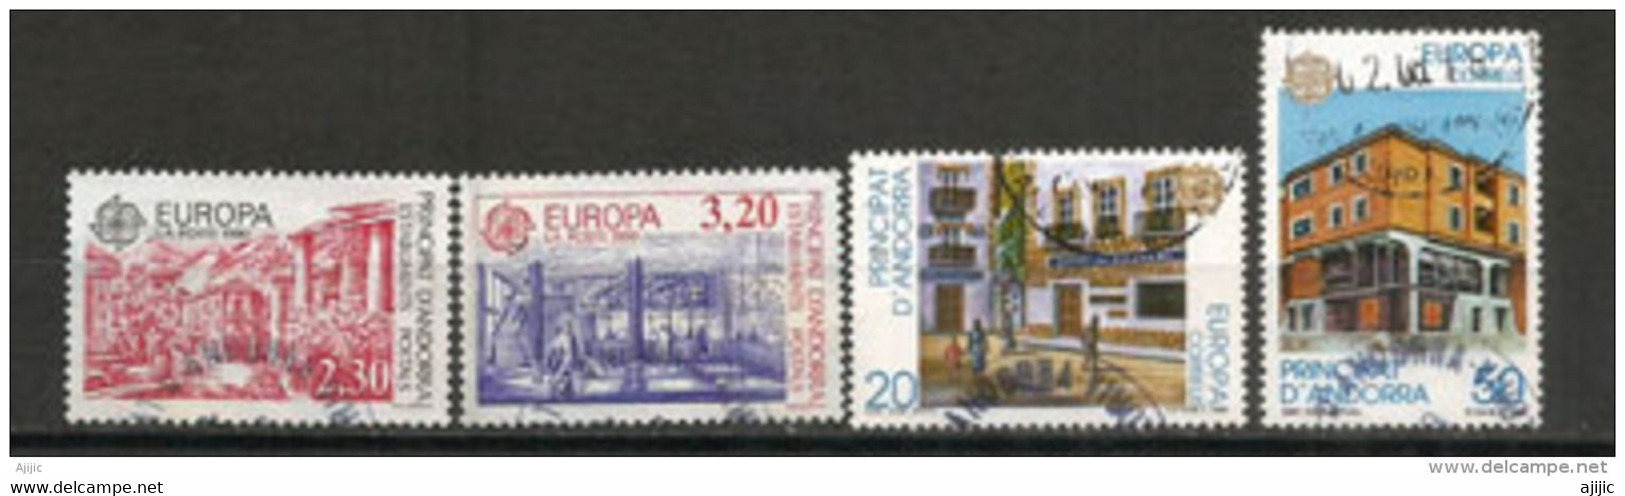 ANDORRA /ANDORRE.Europa 1990, Bureaux De Poste En Andorre, 4 Timbres Oblitérés, 1 ère Qualité - Usati